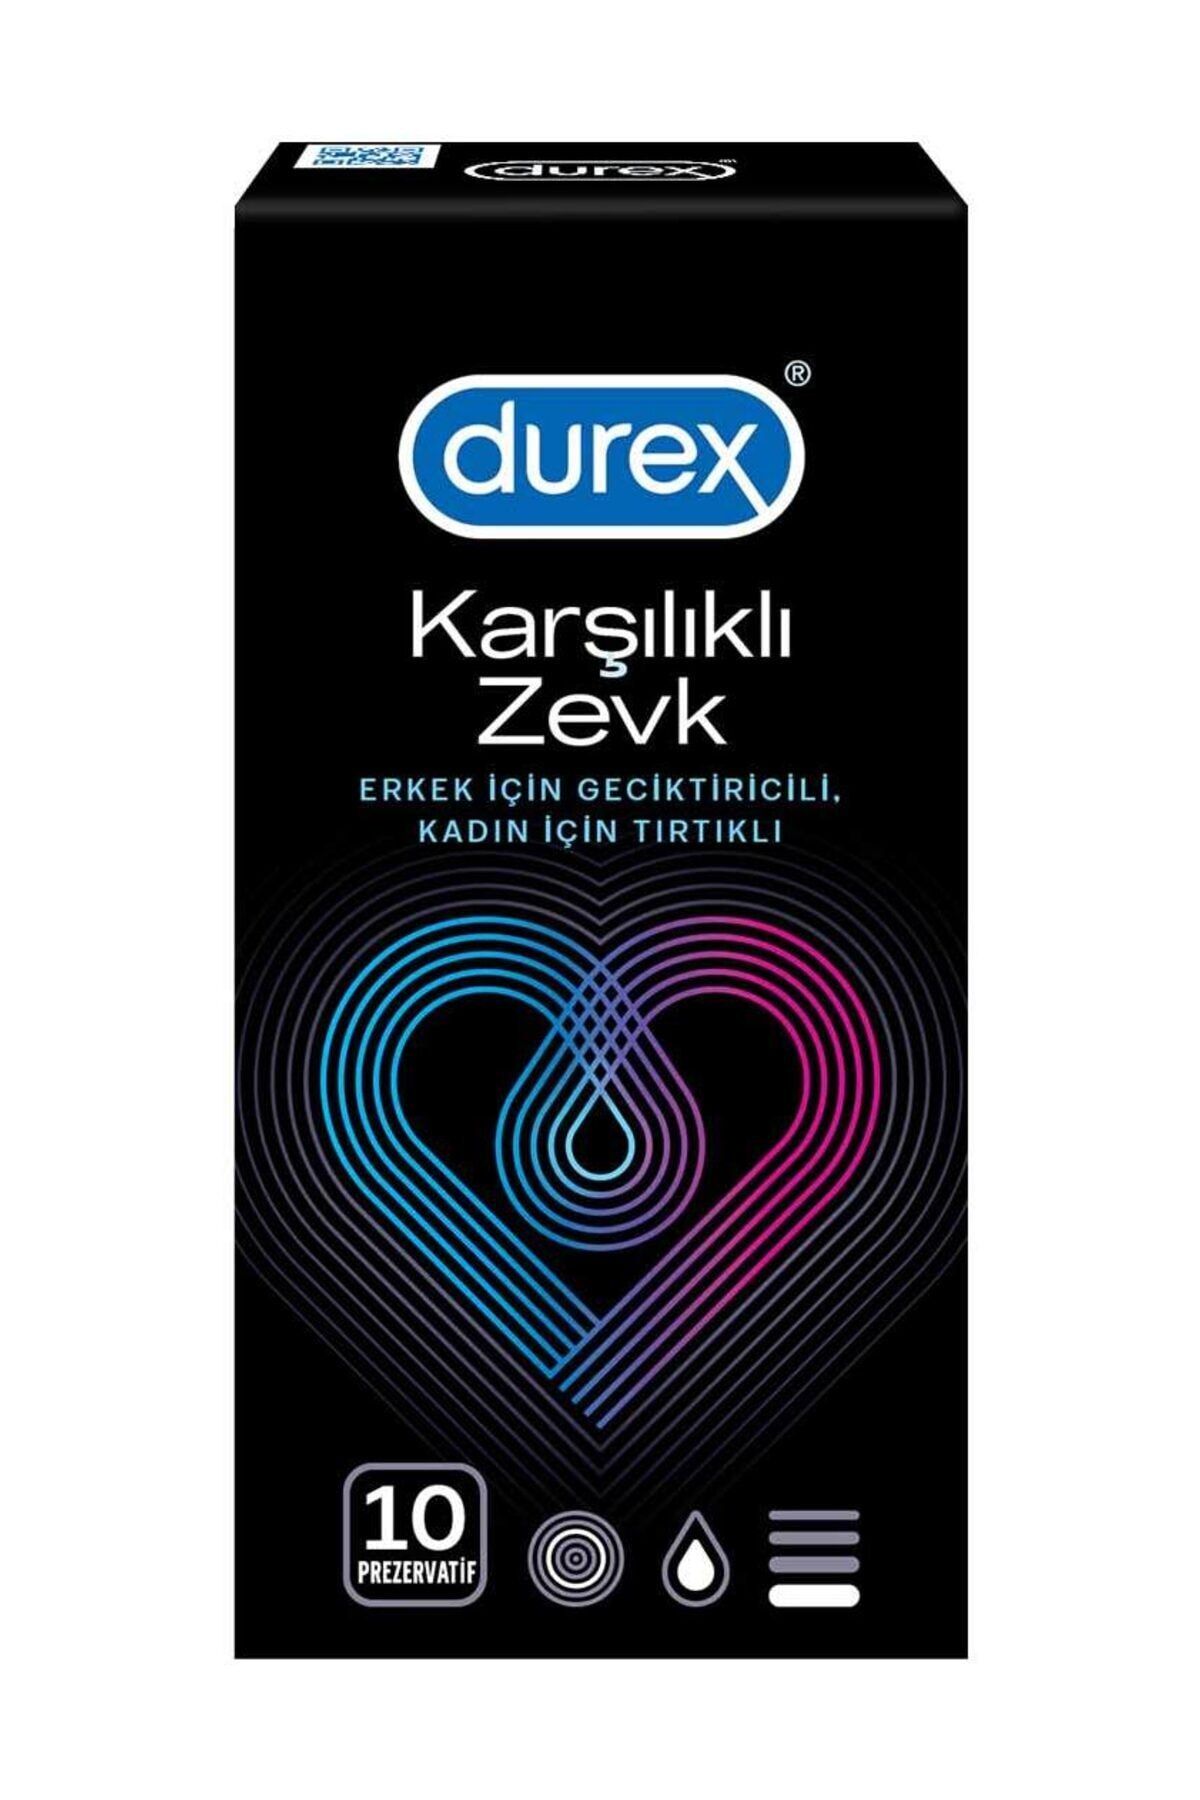 Durex Karşılıklı Zevk 10'lu Prezervatif